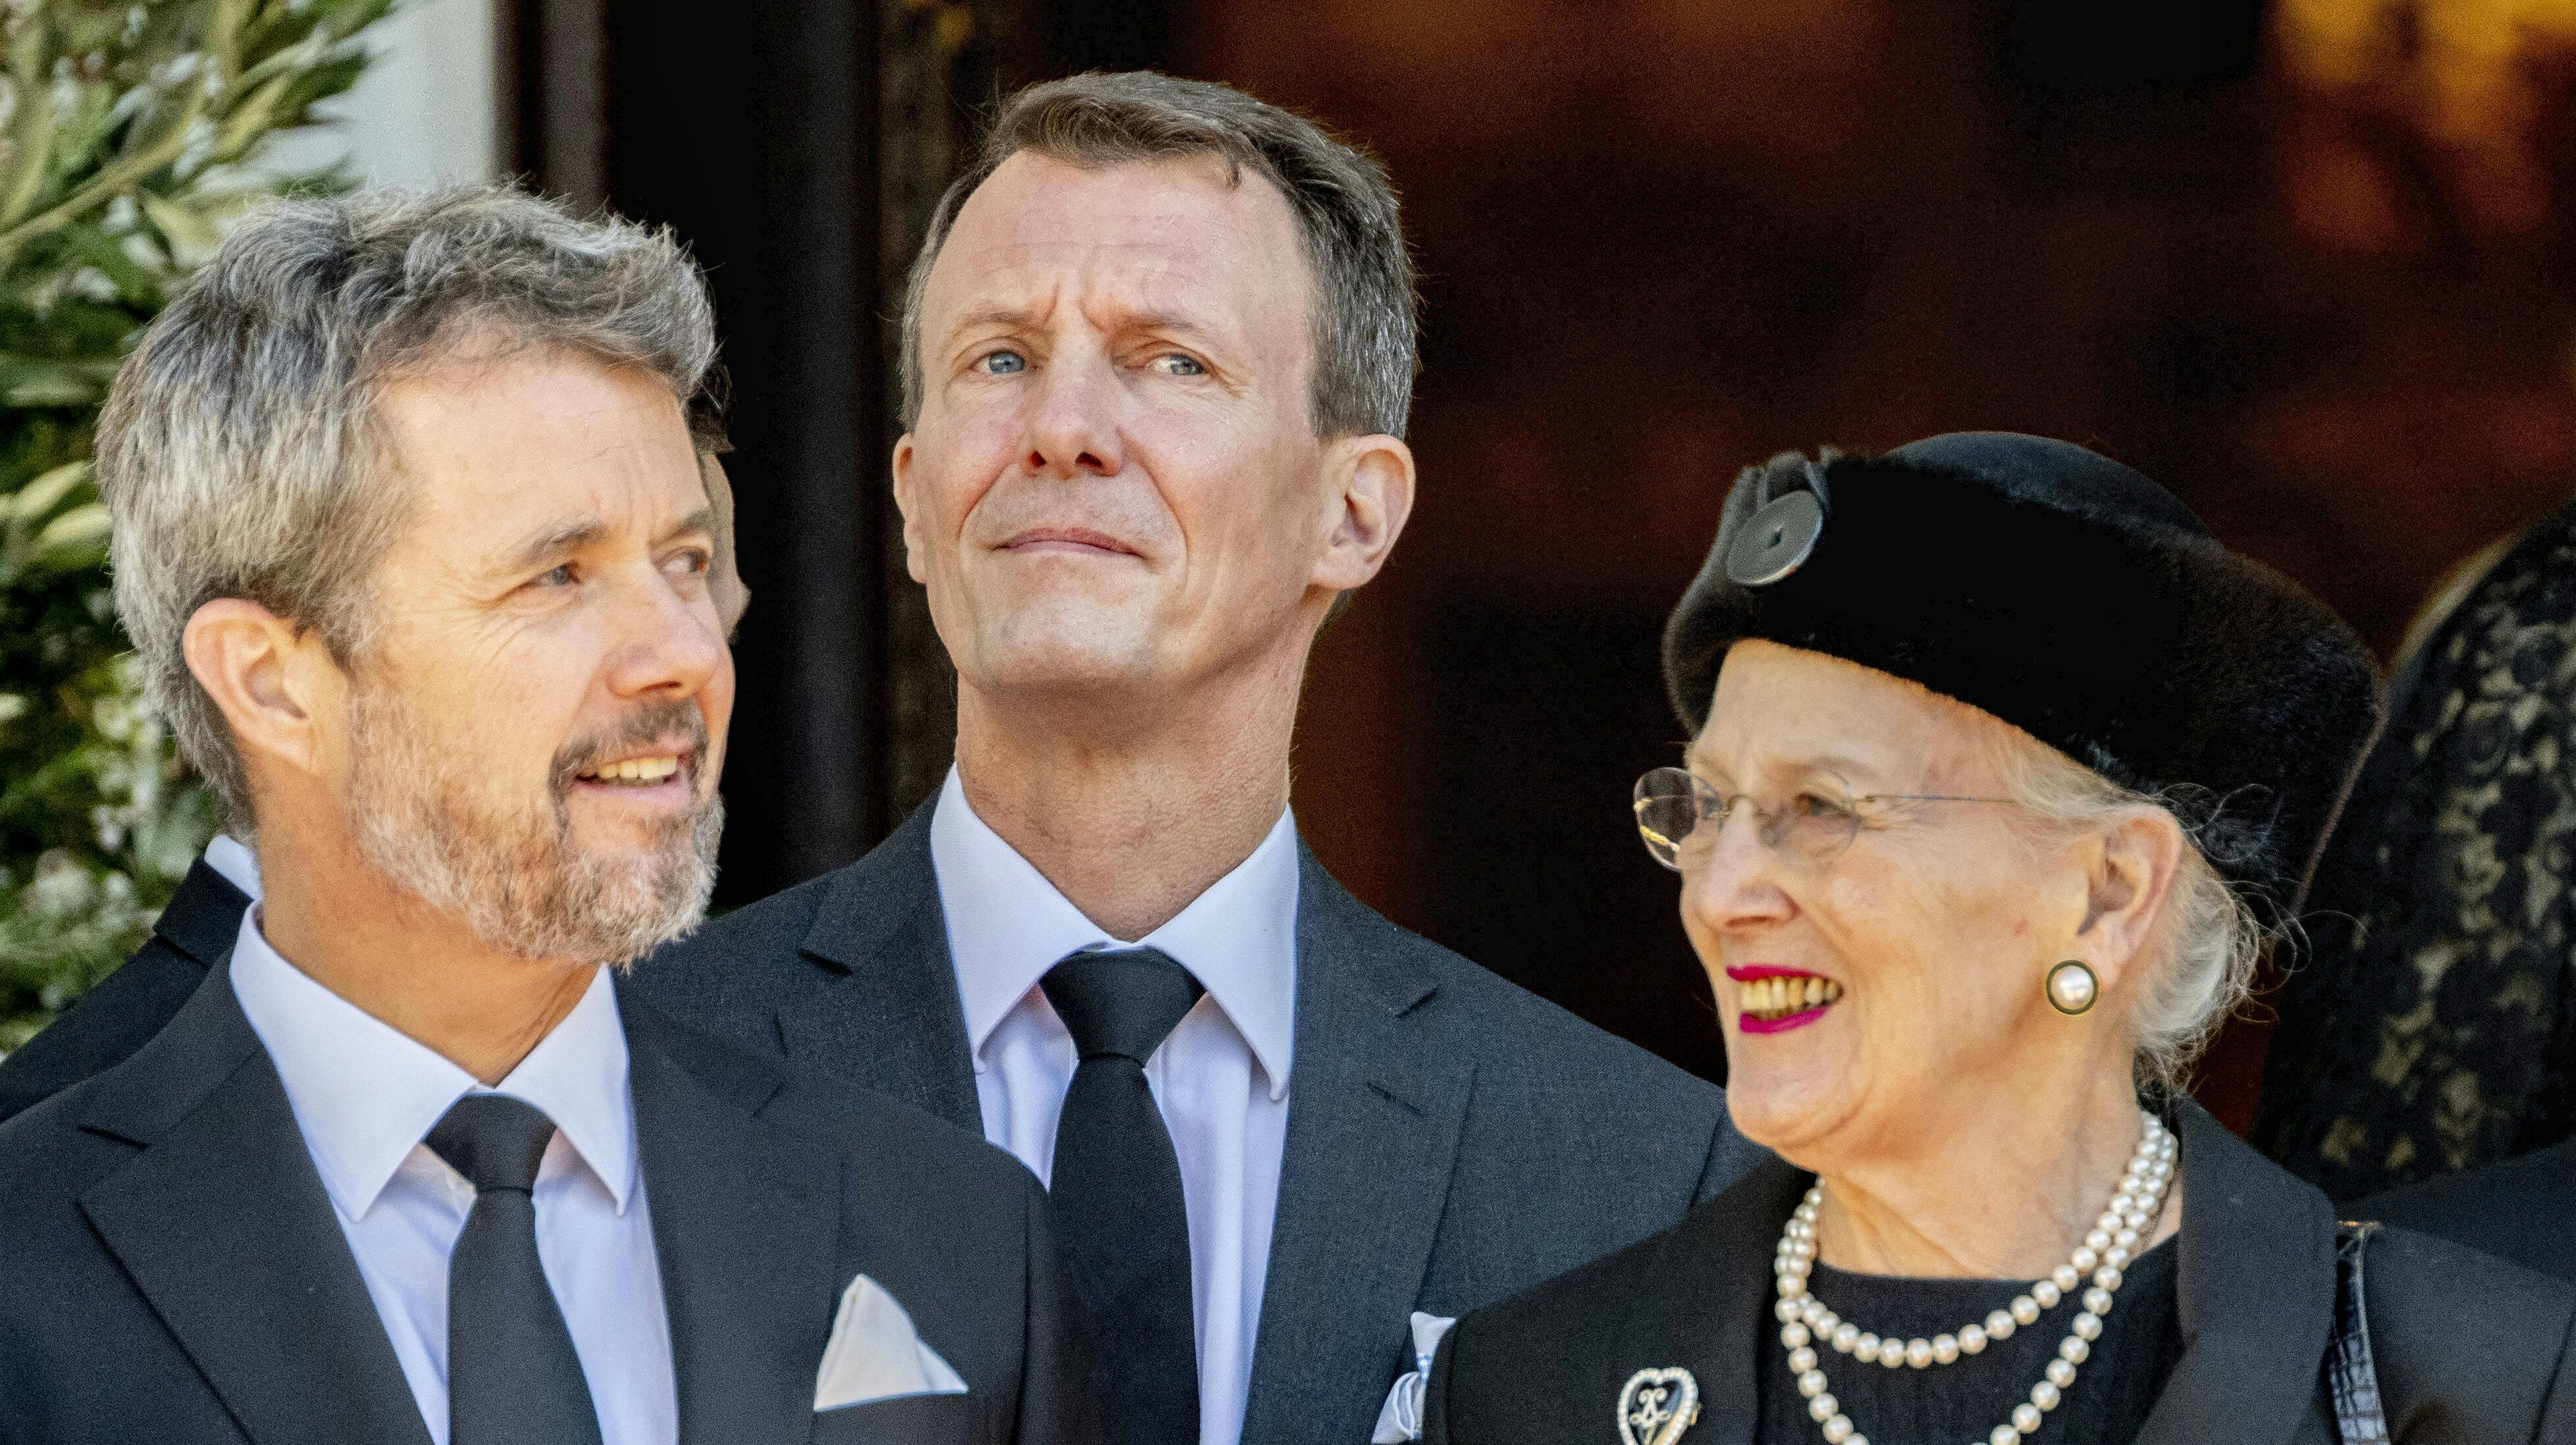 Kronprins Frederik, prins Joachim og dronning Margrethe